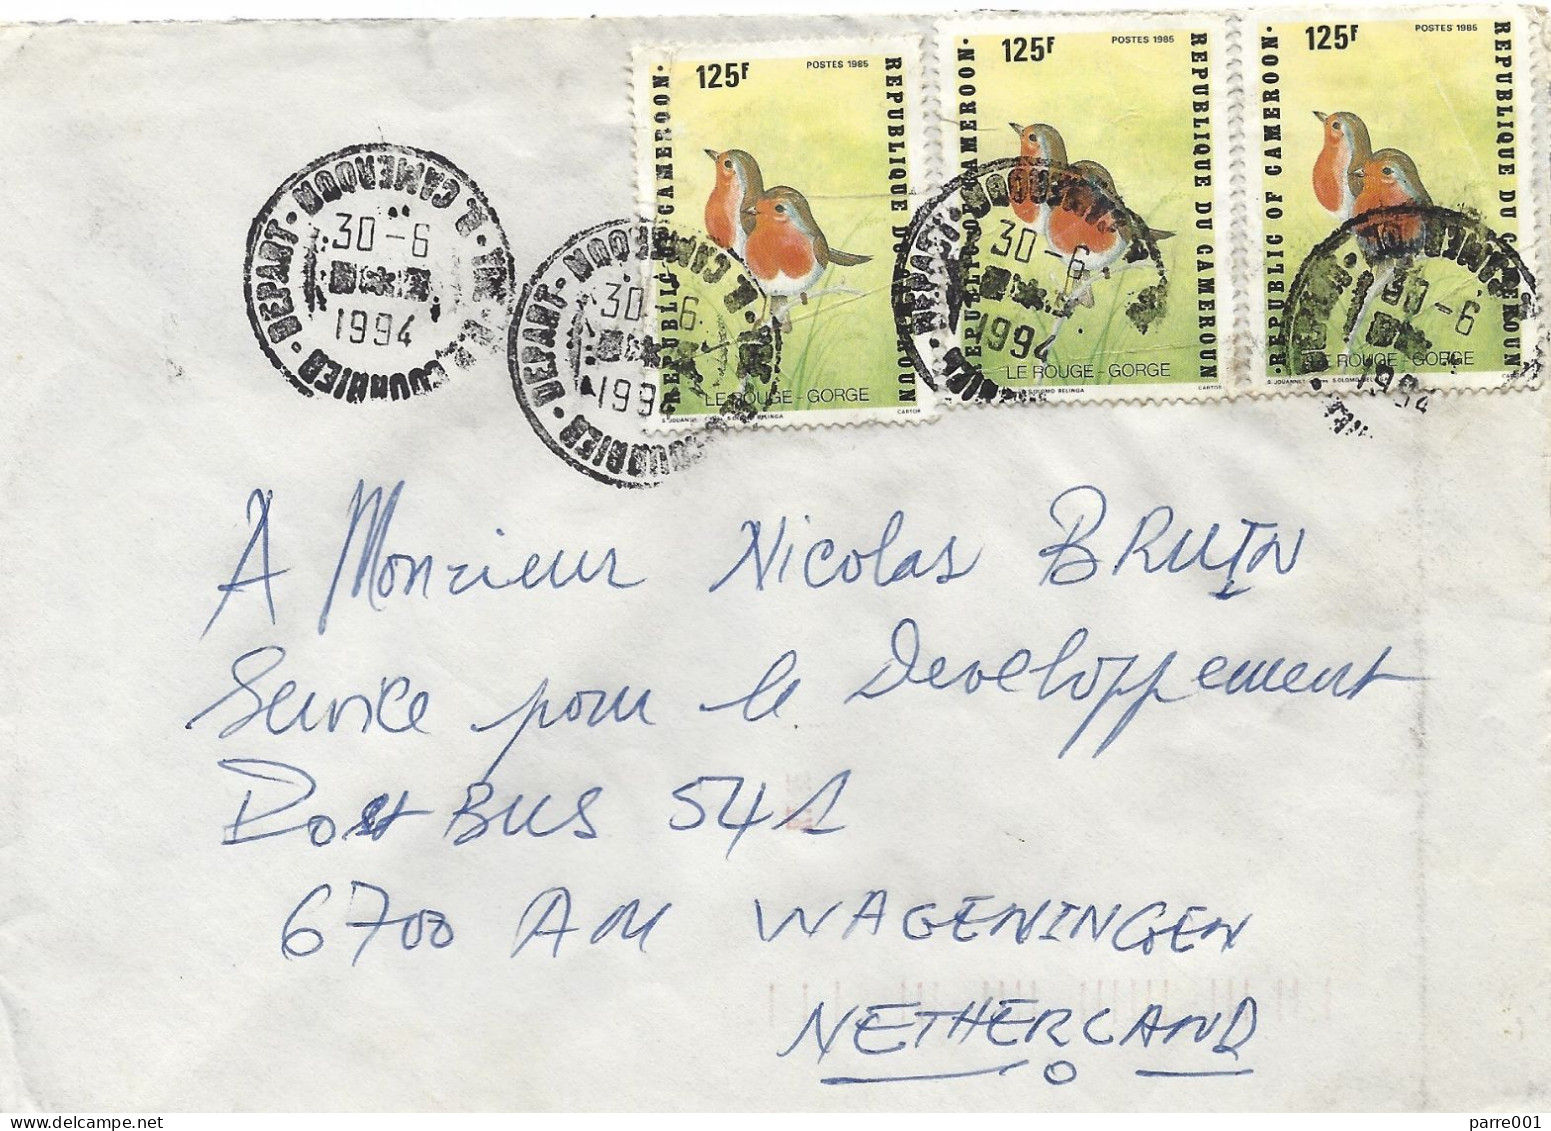 Cameroun Cameroon 1994 Yaounde Robin Erithacus Rubecula Cover - Sperlingsvögel & Singvögel